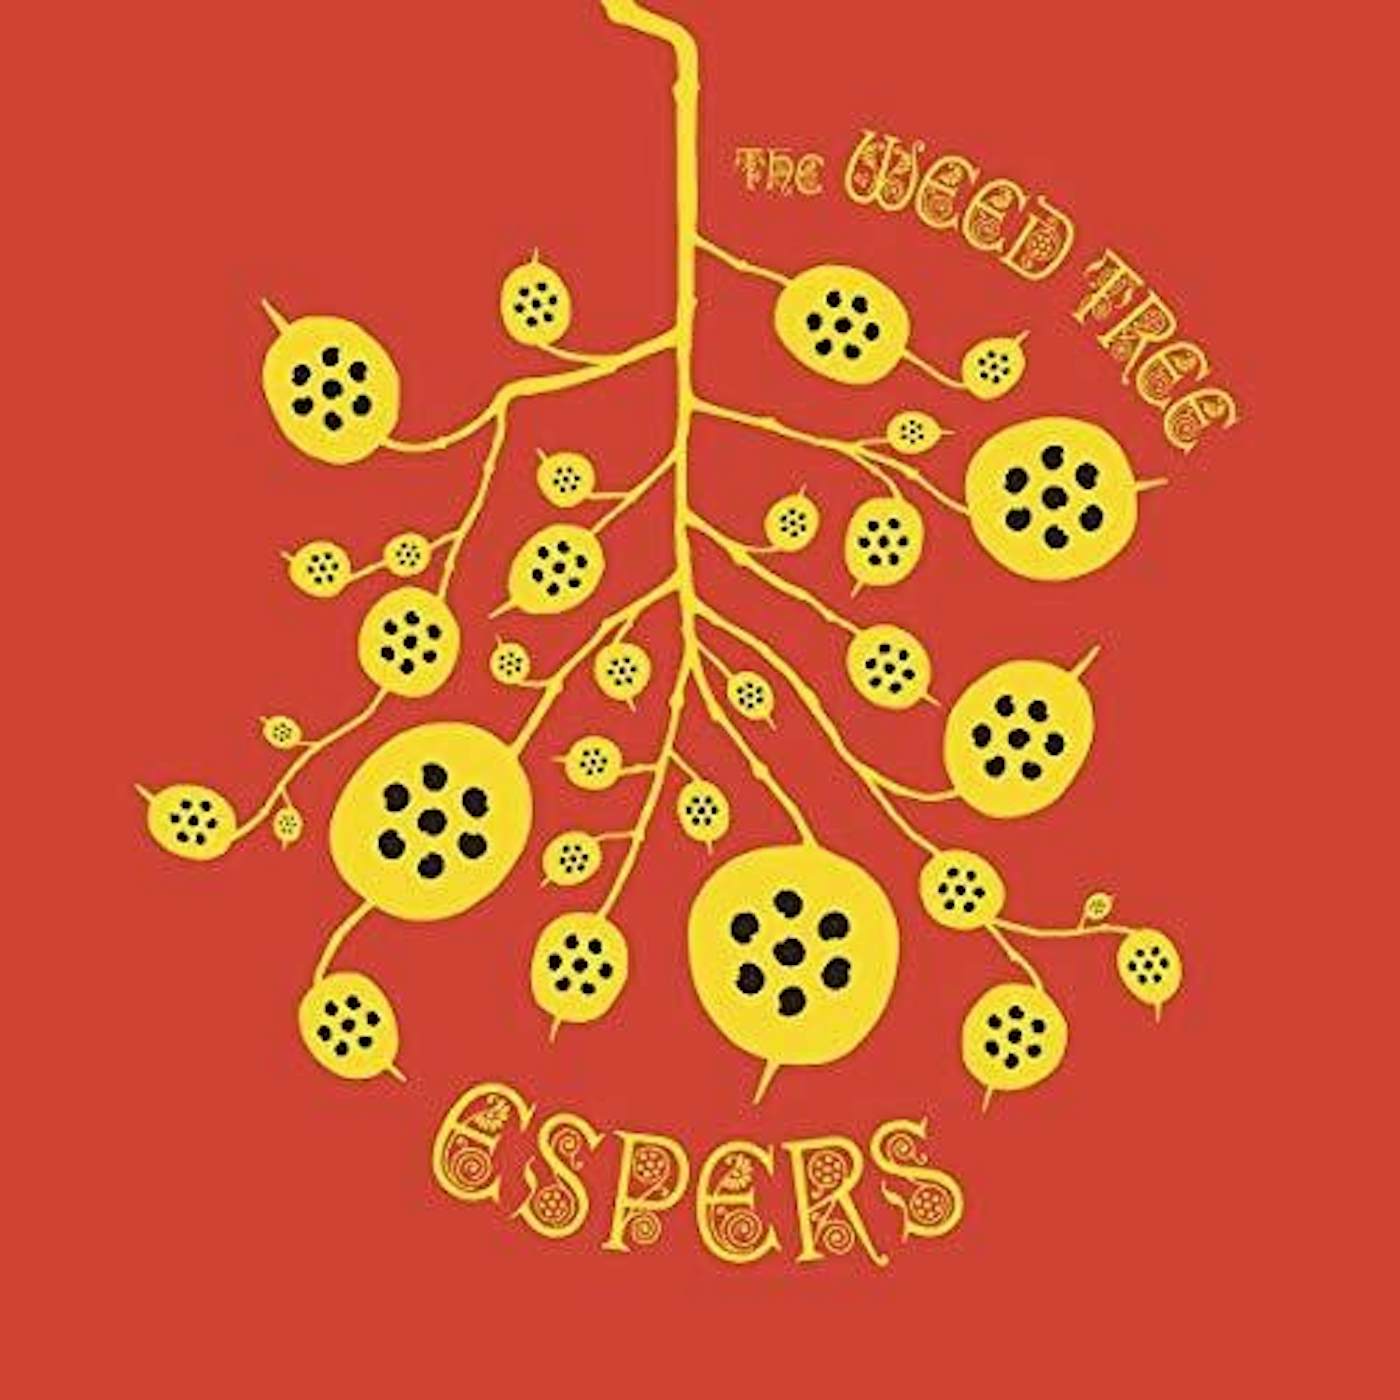 Espers WEED TREE Vinyl Record